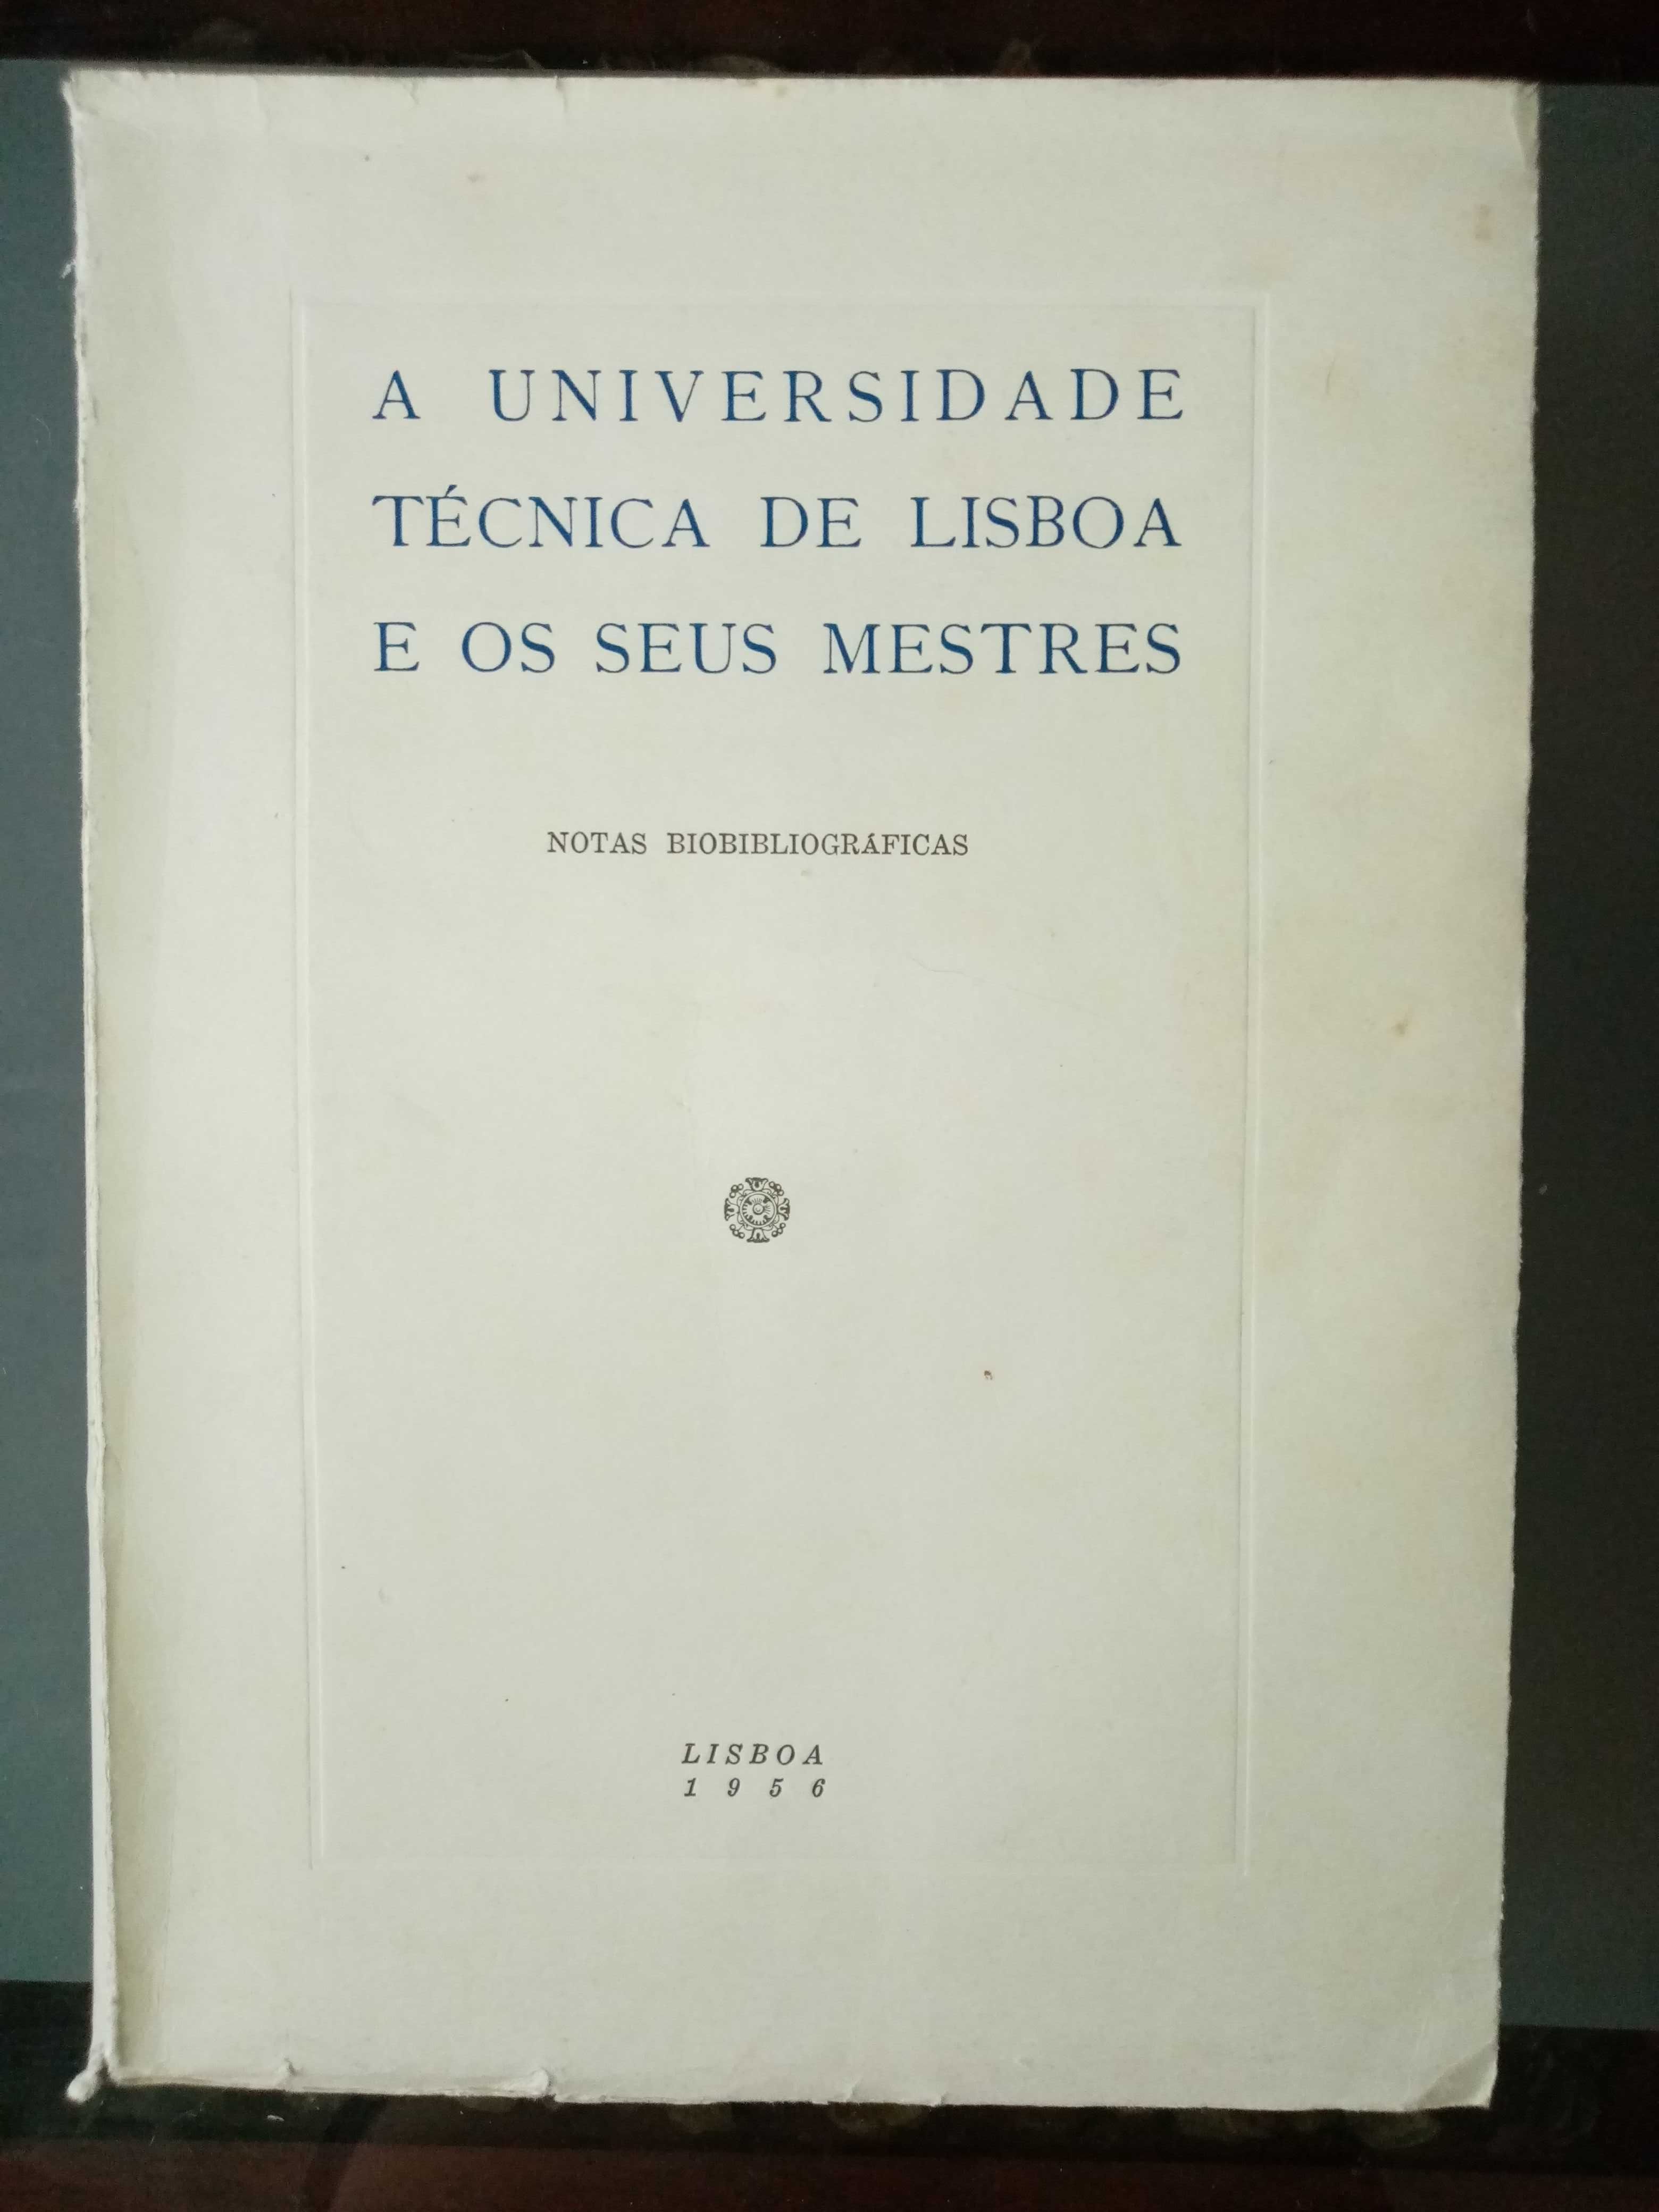 Academia Portuguesa da História Recepção Centenário Batalha S. Mamede